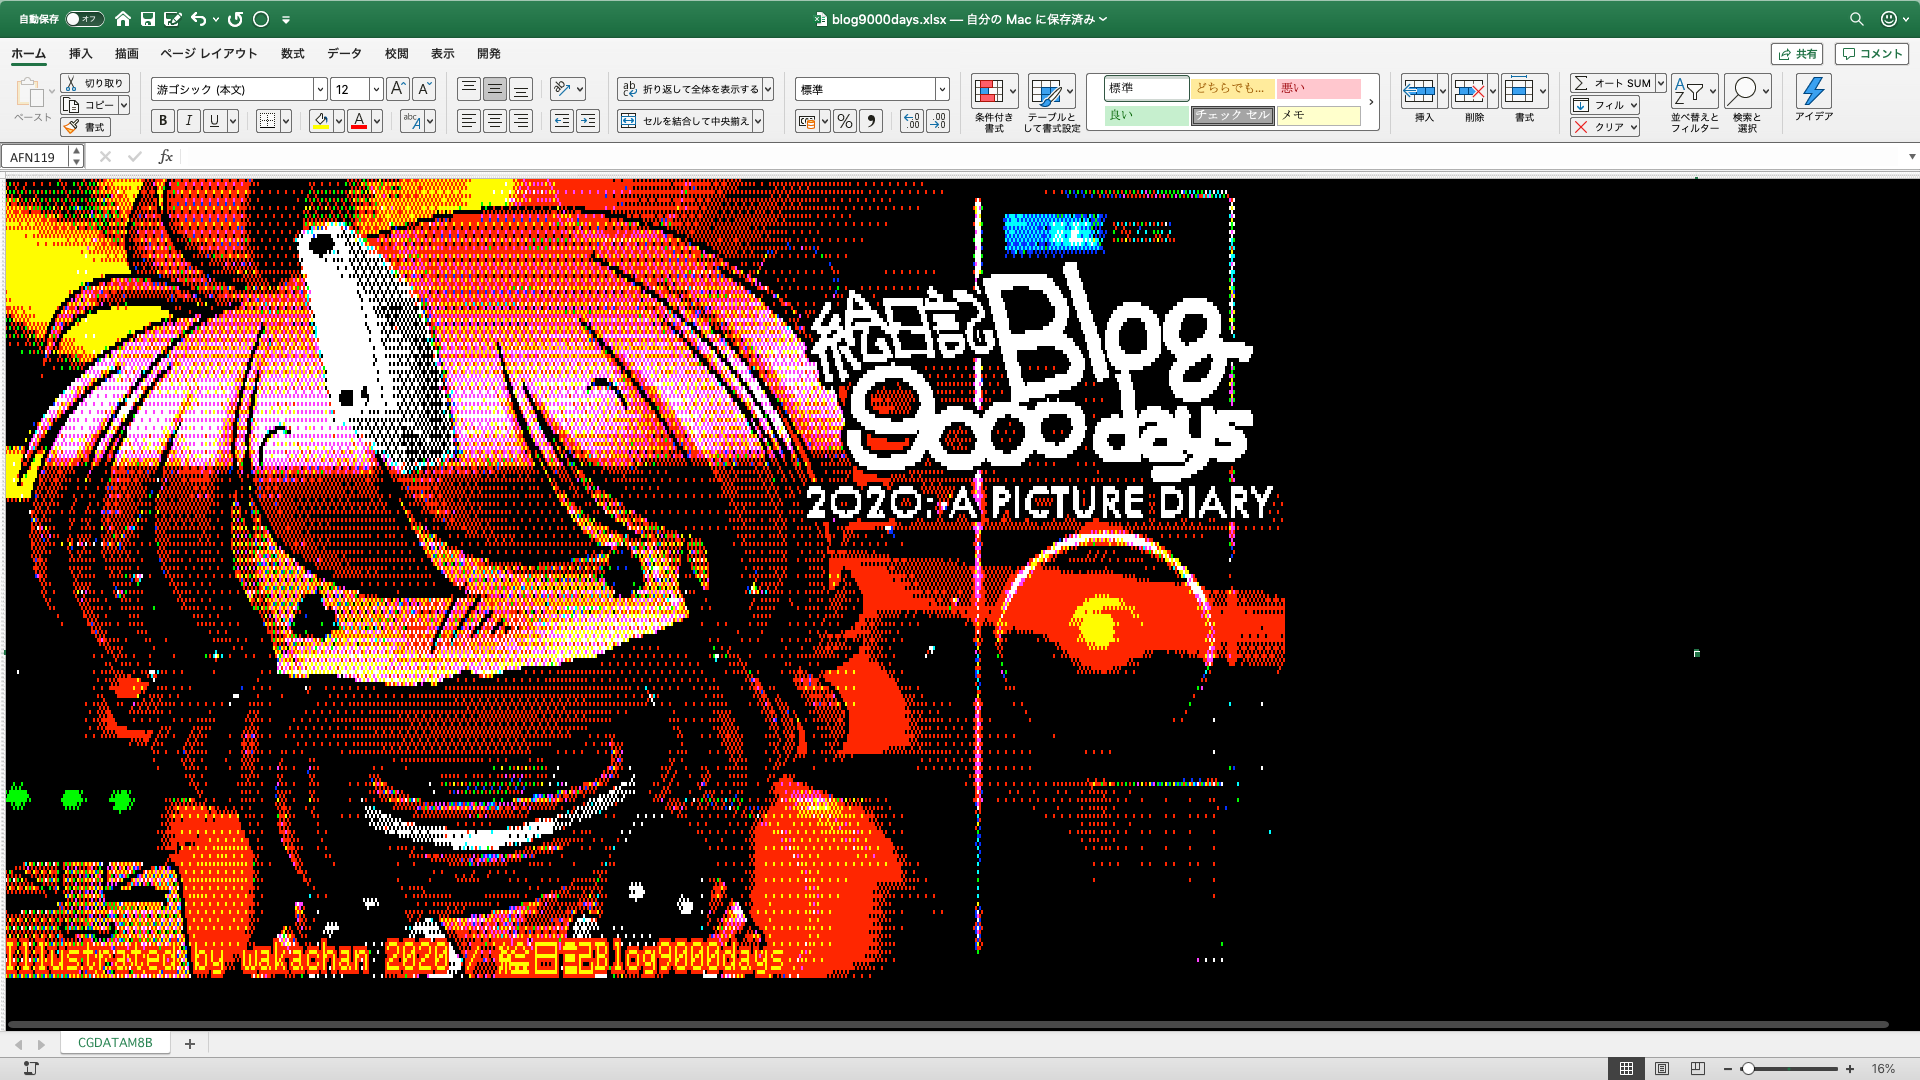 【ExcelArt(エクセルアート)】「絵日記Blog9000Days」Excel展開中の画面